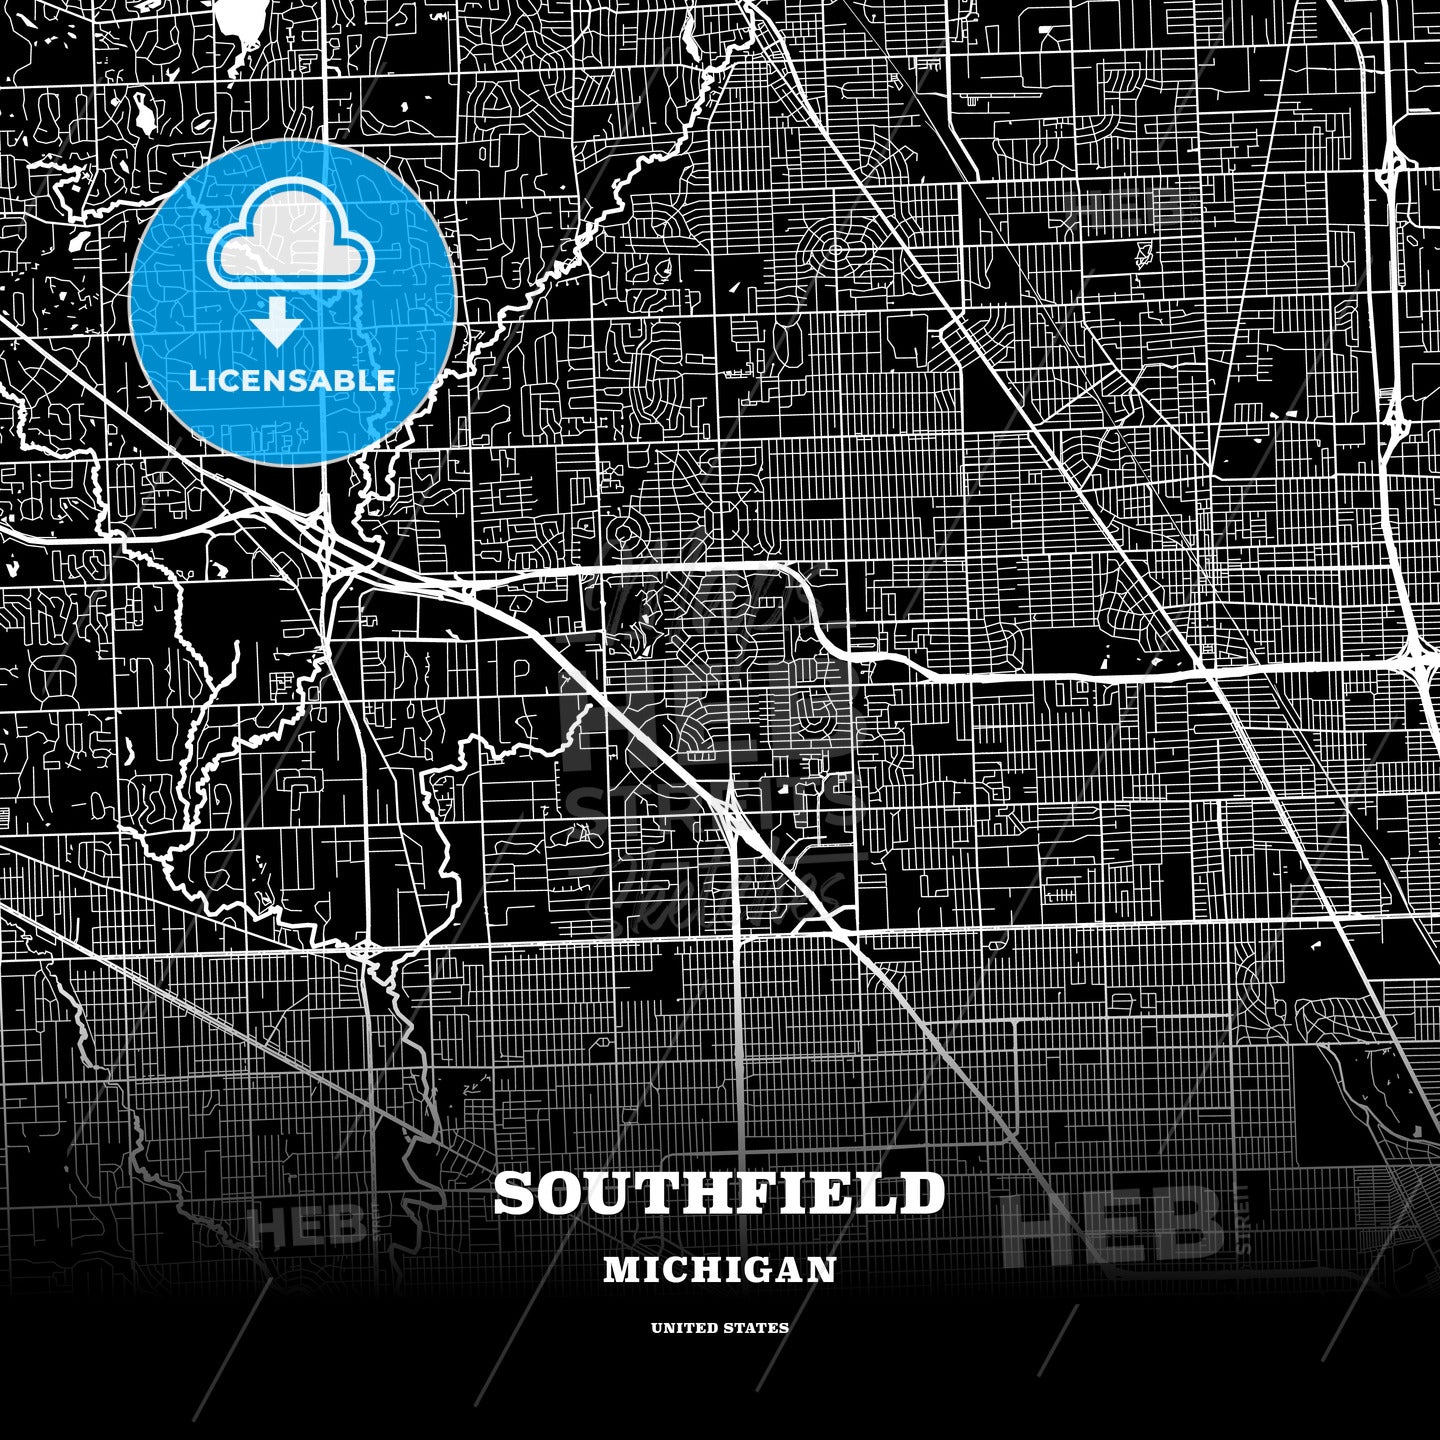 Southfield, Michigan, USA map